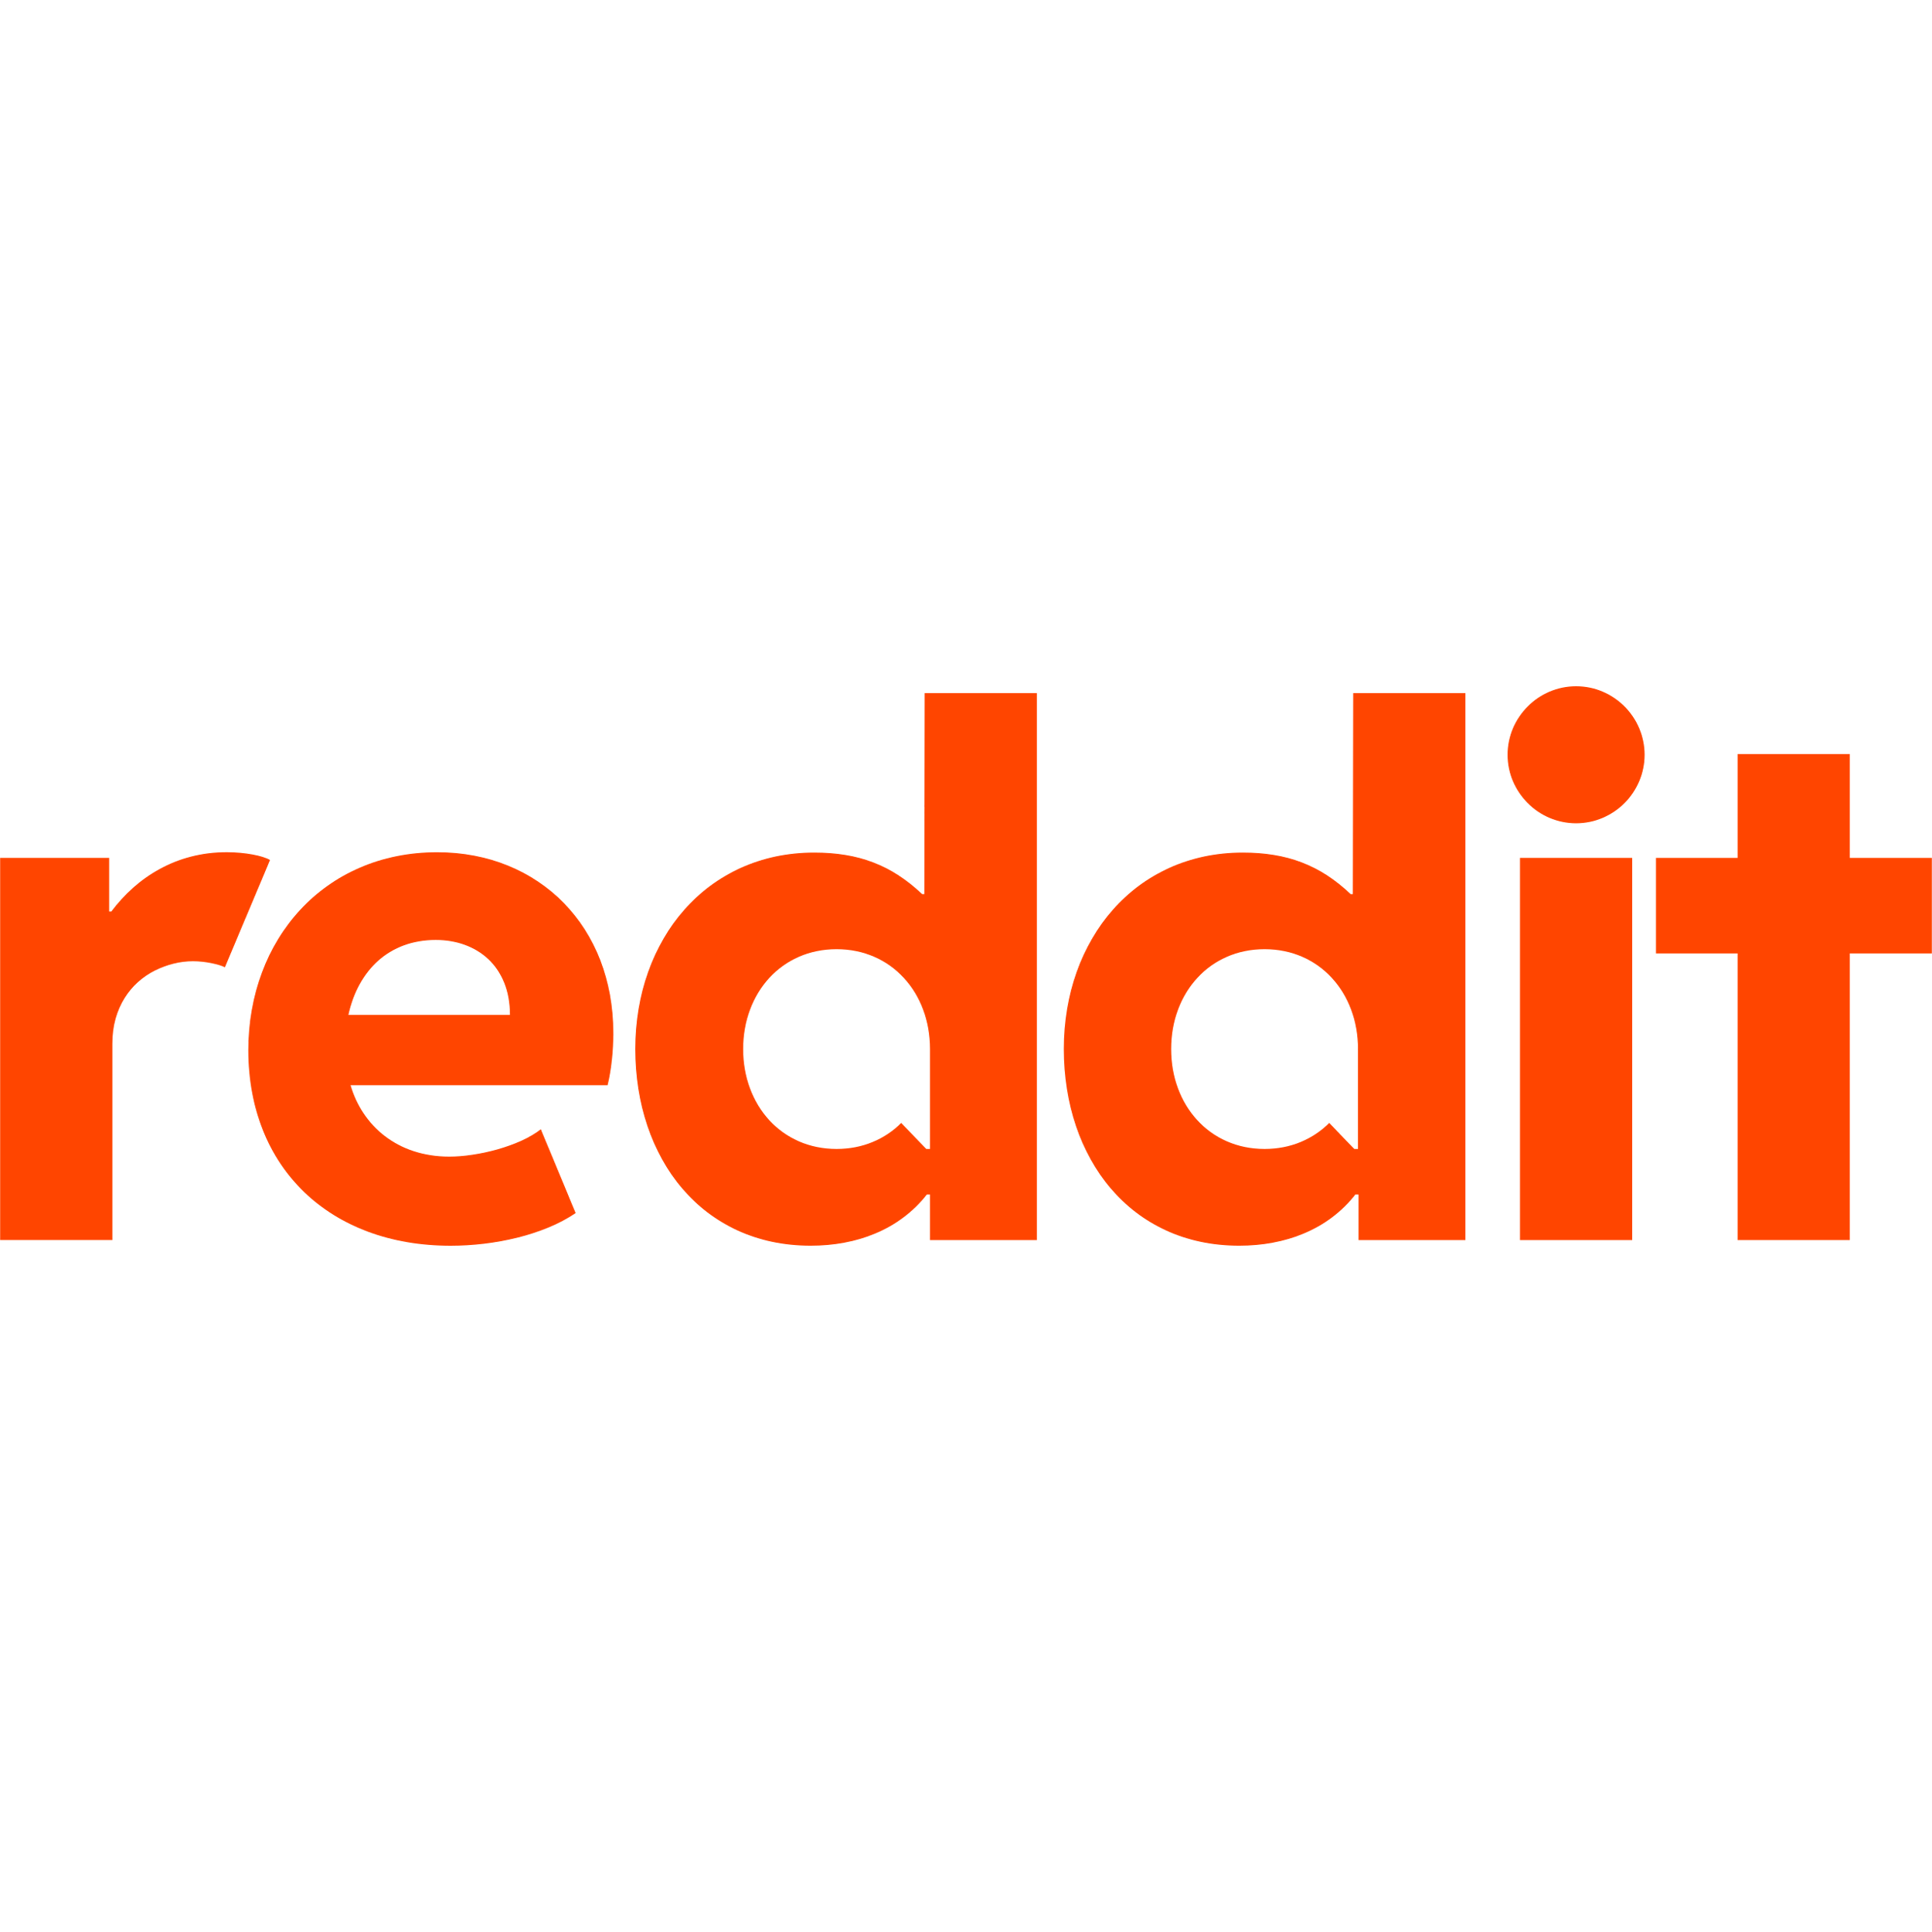 Reddit Wordmark Logo  Transparent Image